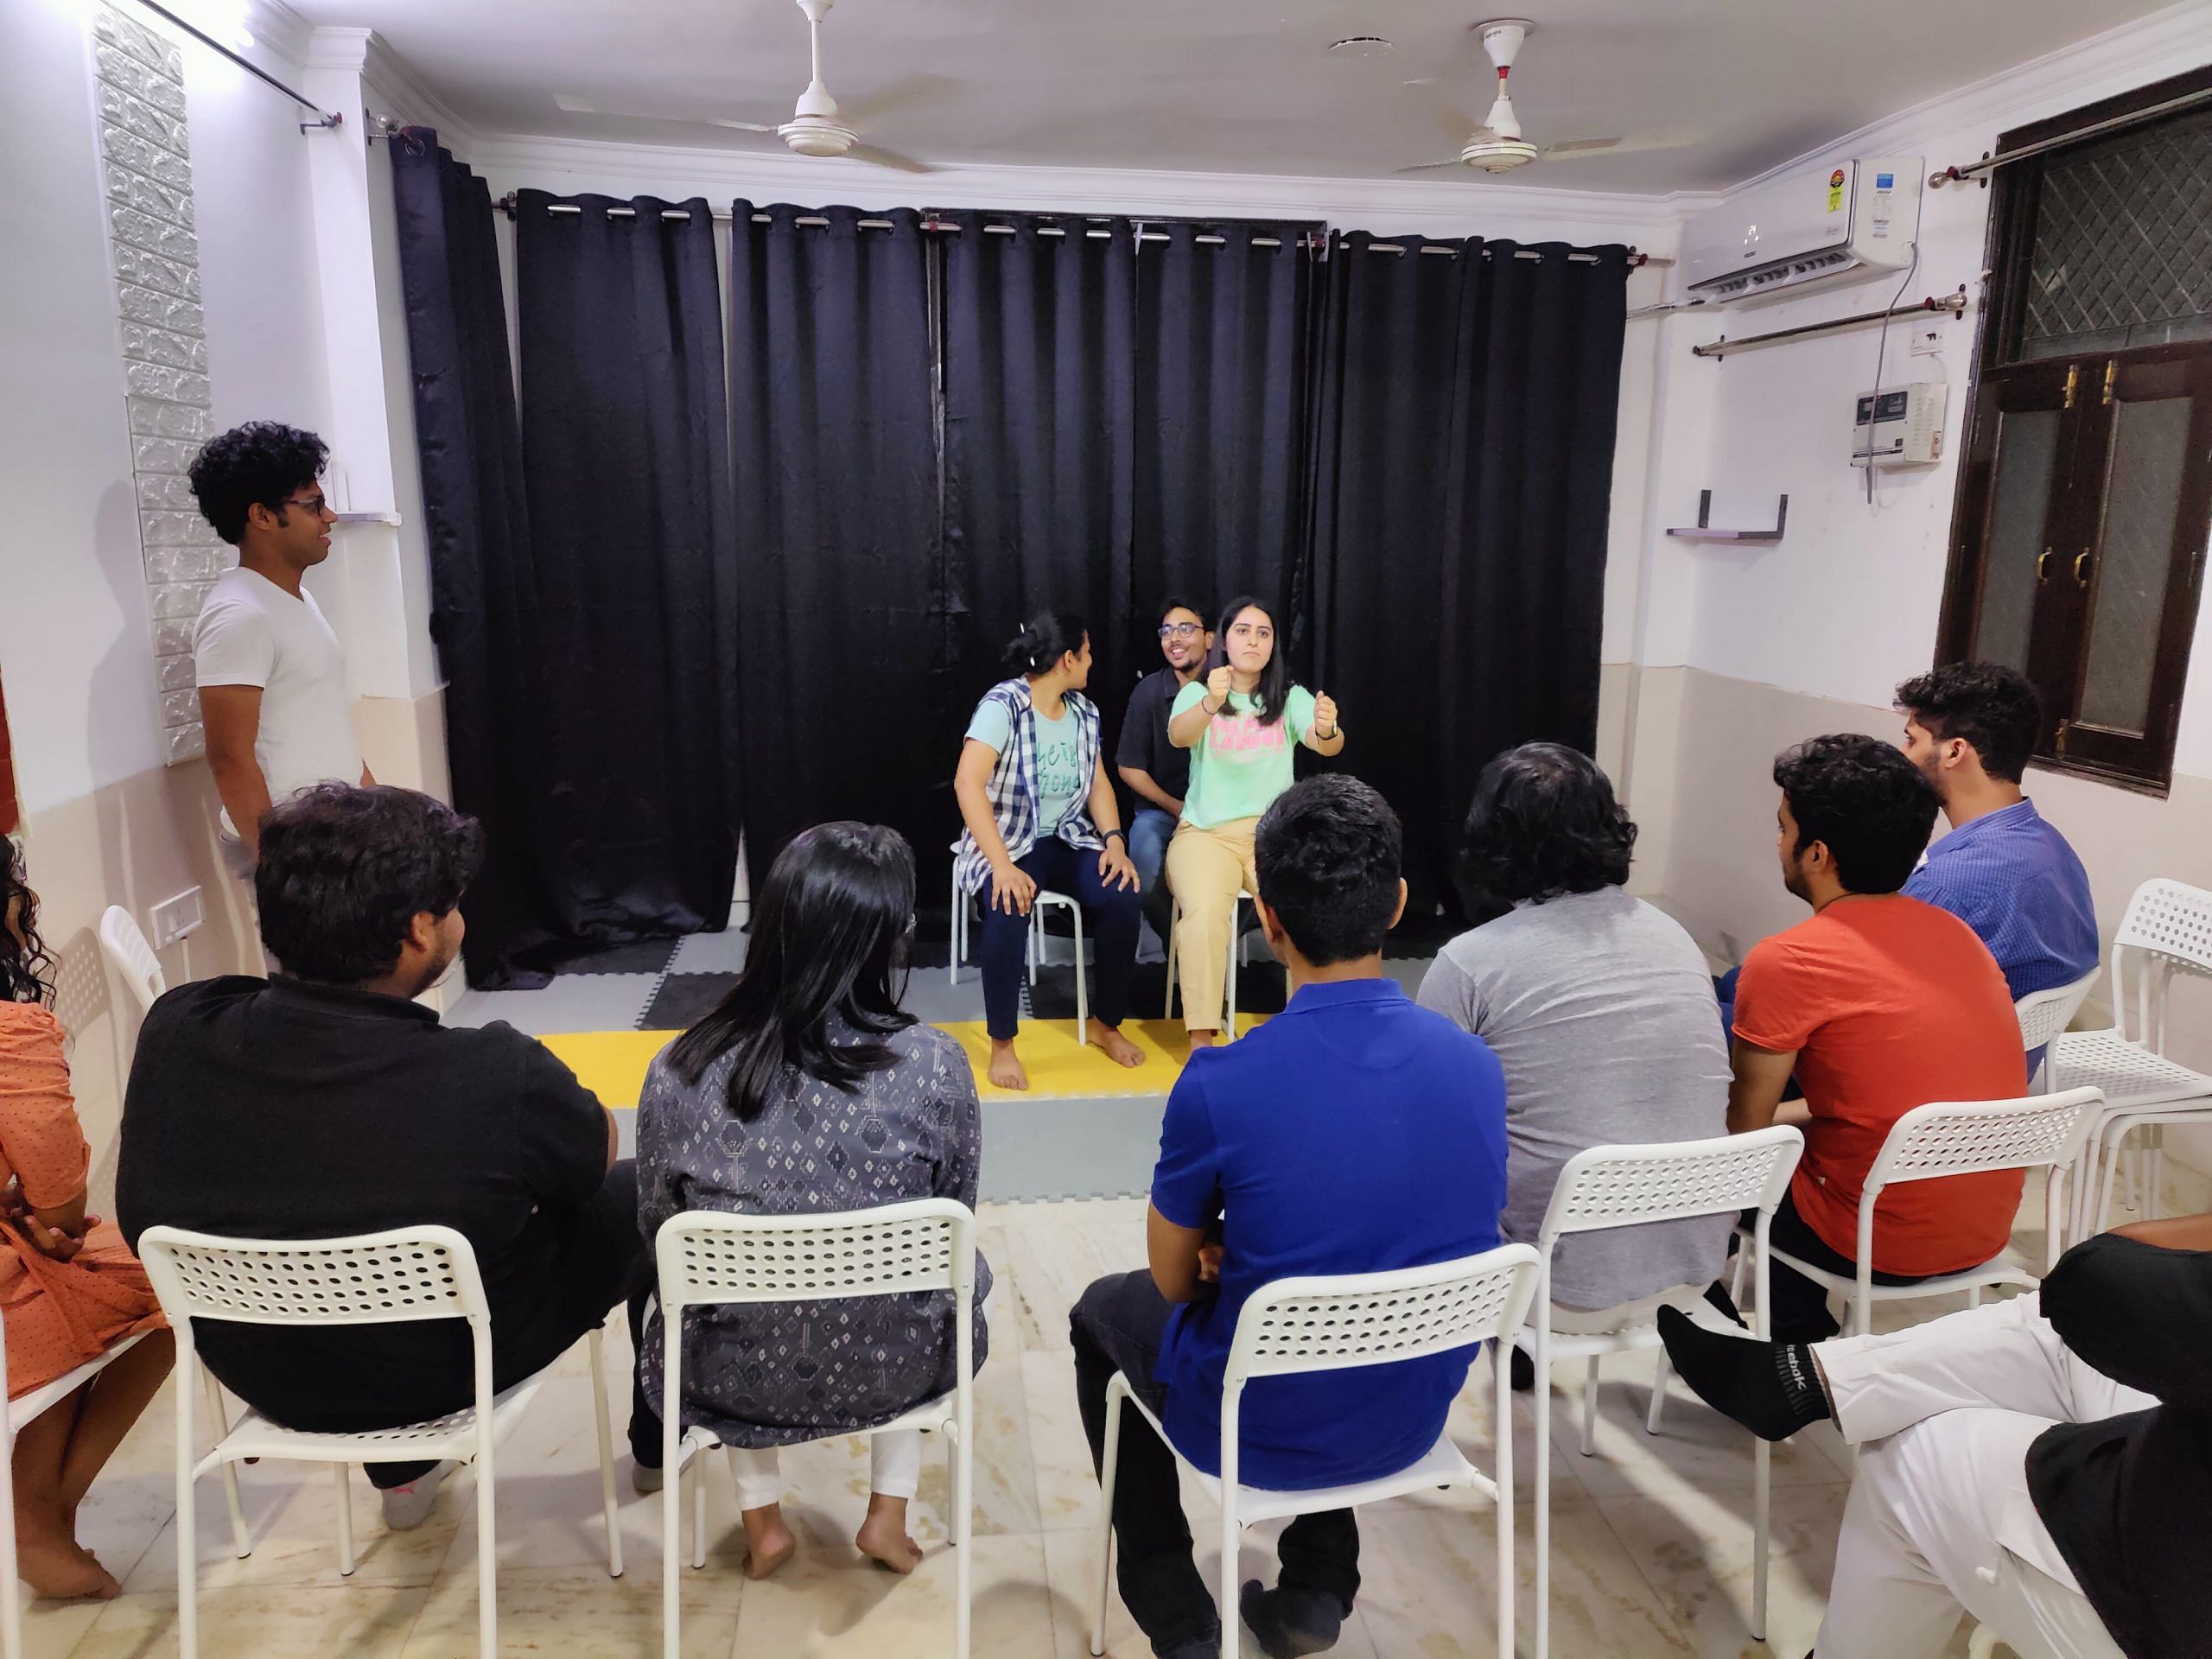 An improv jam happening in Kaivalya's new studio space in Central Delhi | Yashika Singla